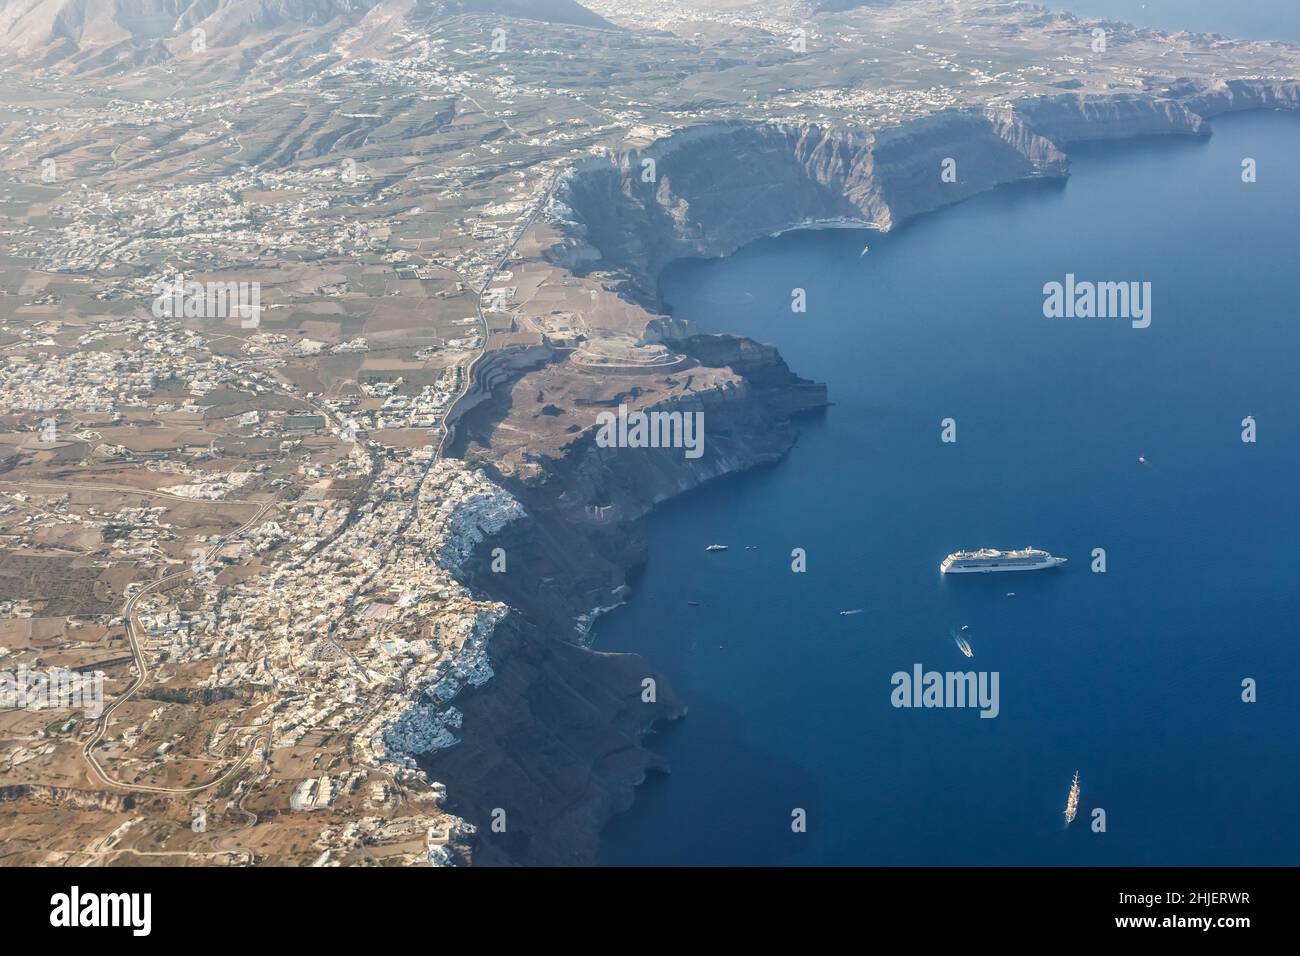 Vacances sur l'île de Santorini en Grèce voyage voyage Fira Thera ville Méditerranée Mer vue photo aérienne navire Santorin Banque D'Images